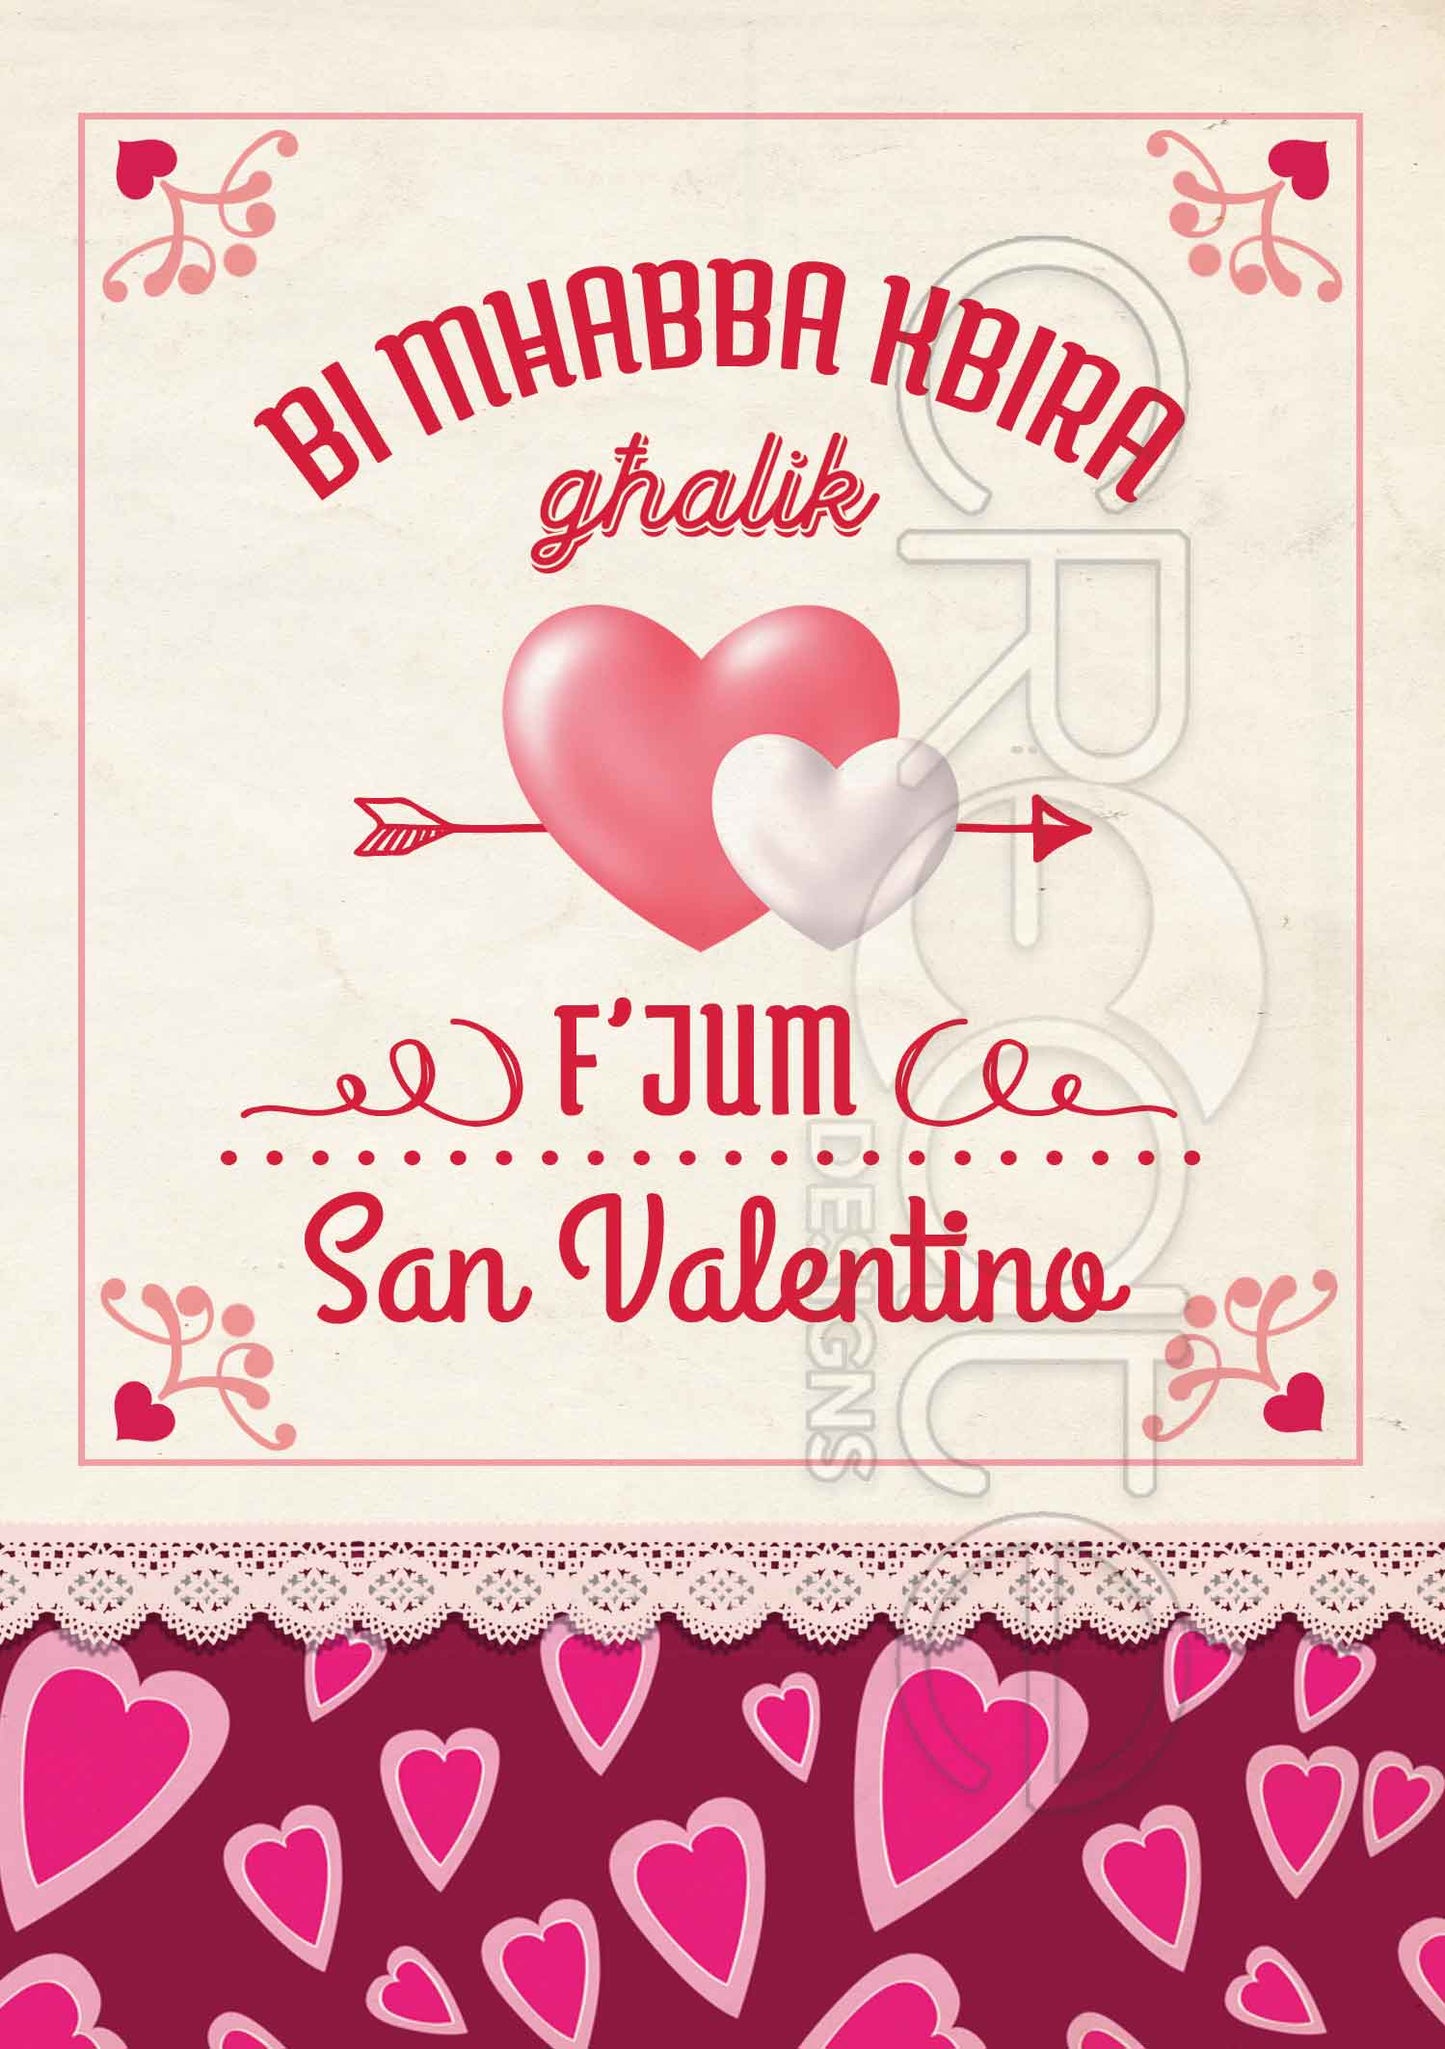 Kartolina għal San Valentino b'żewġt iqlub fi frame